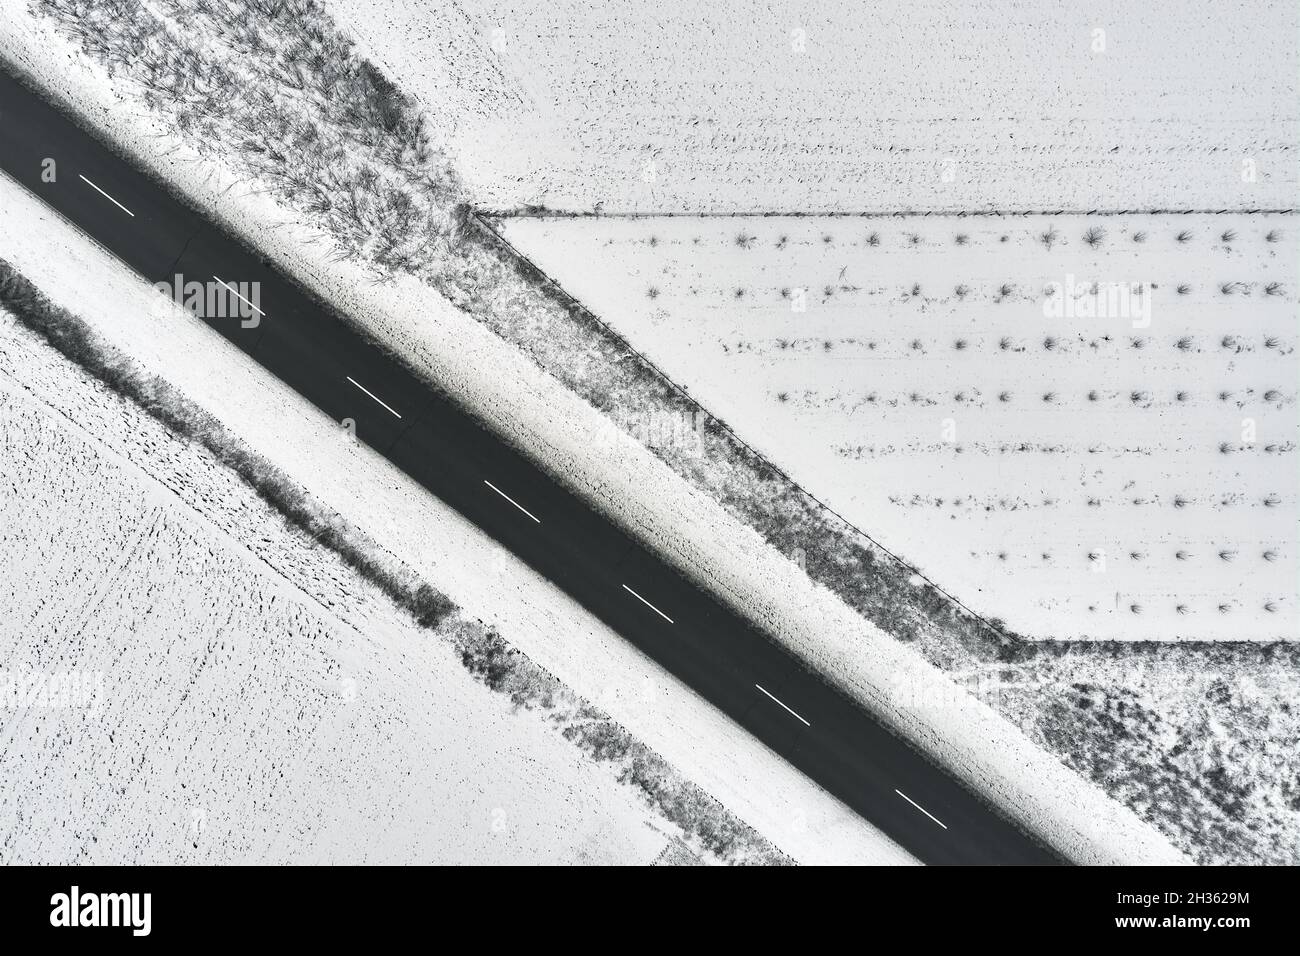 Foto aerea dall'alto della strada vuota attraverso la campagna in inverno, composizione astratta minima Foto Stock